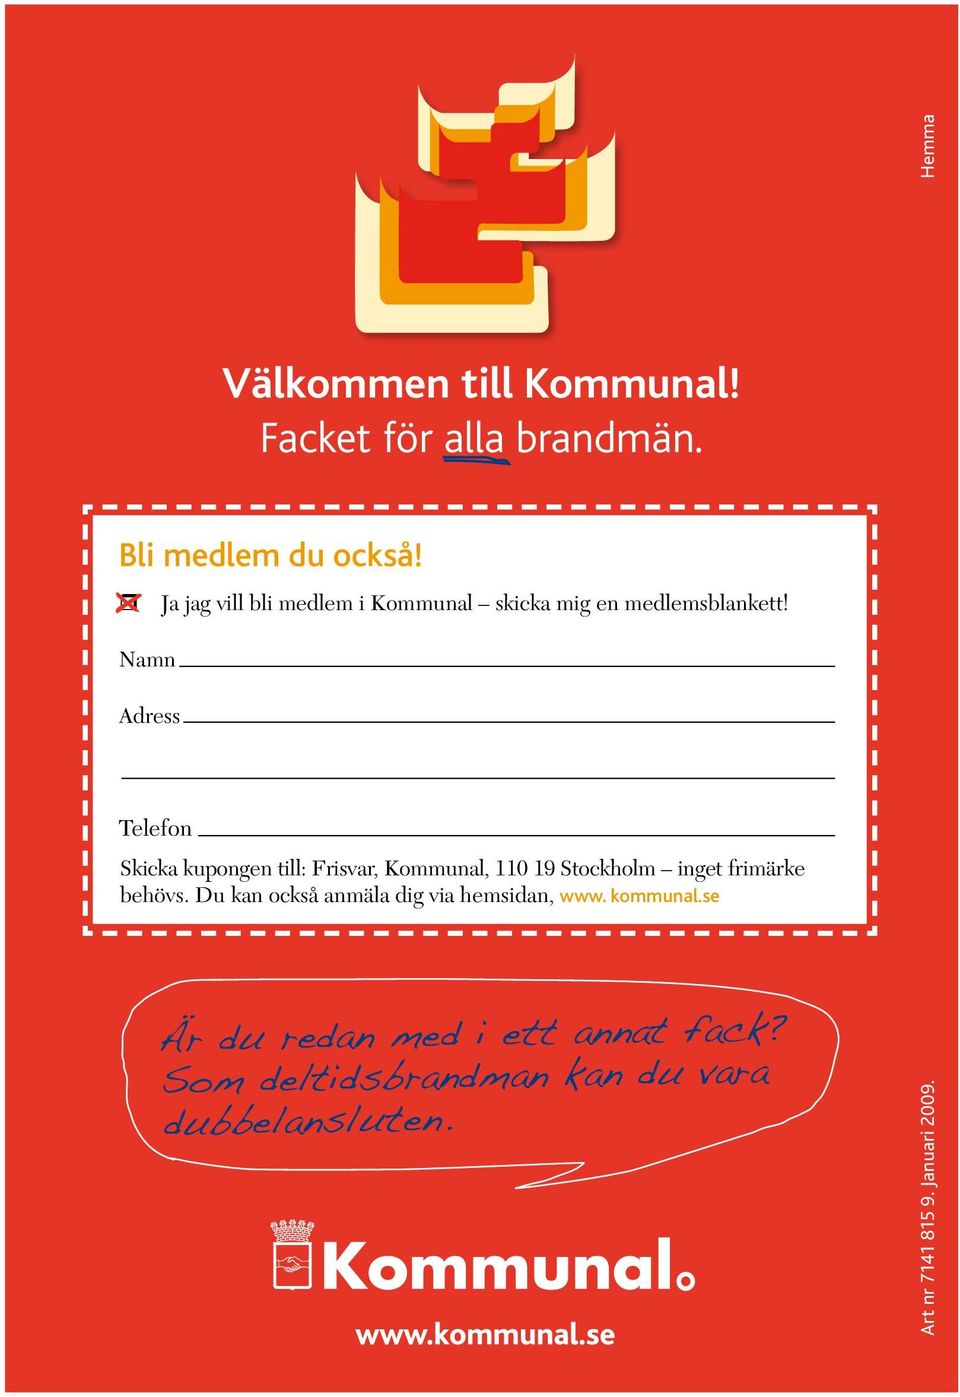 Skicka kupongen till: Frisvar, Kommunal, 110 19 Stockholm inget frimärke behövs.